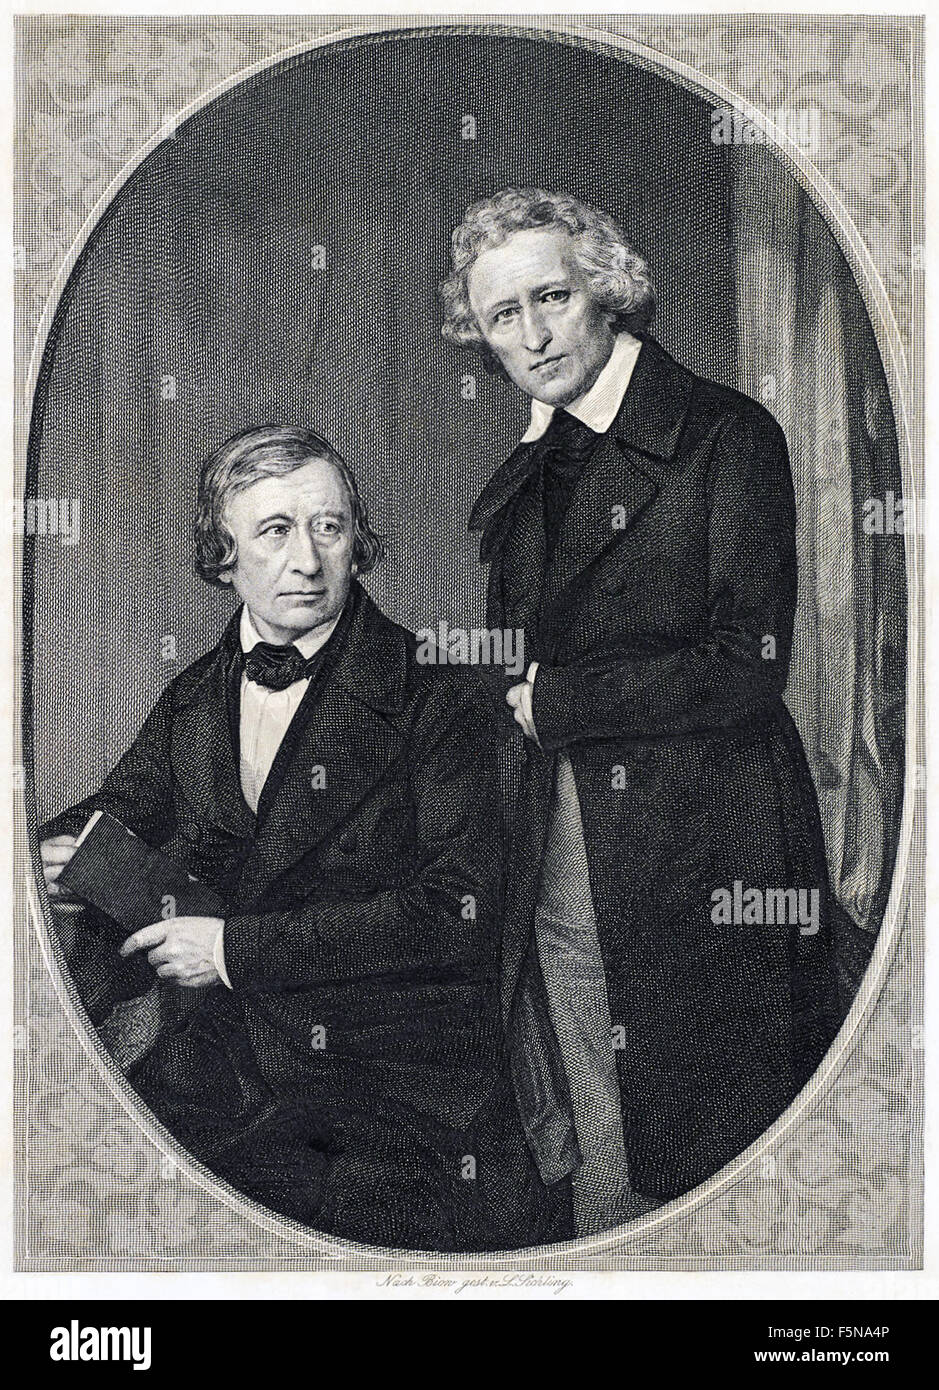 Fratelli Grimm - Wilhelm Grim (1786-1859) a sinistra e Giacobbe Grimm (1785-1863) destra.Vedere la descrizione per maggiori informazioni. Foto Stock